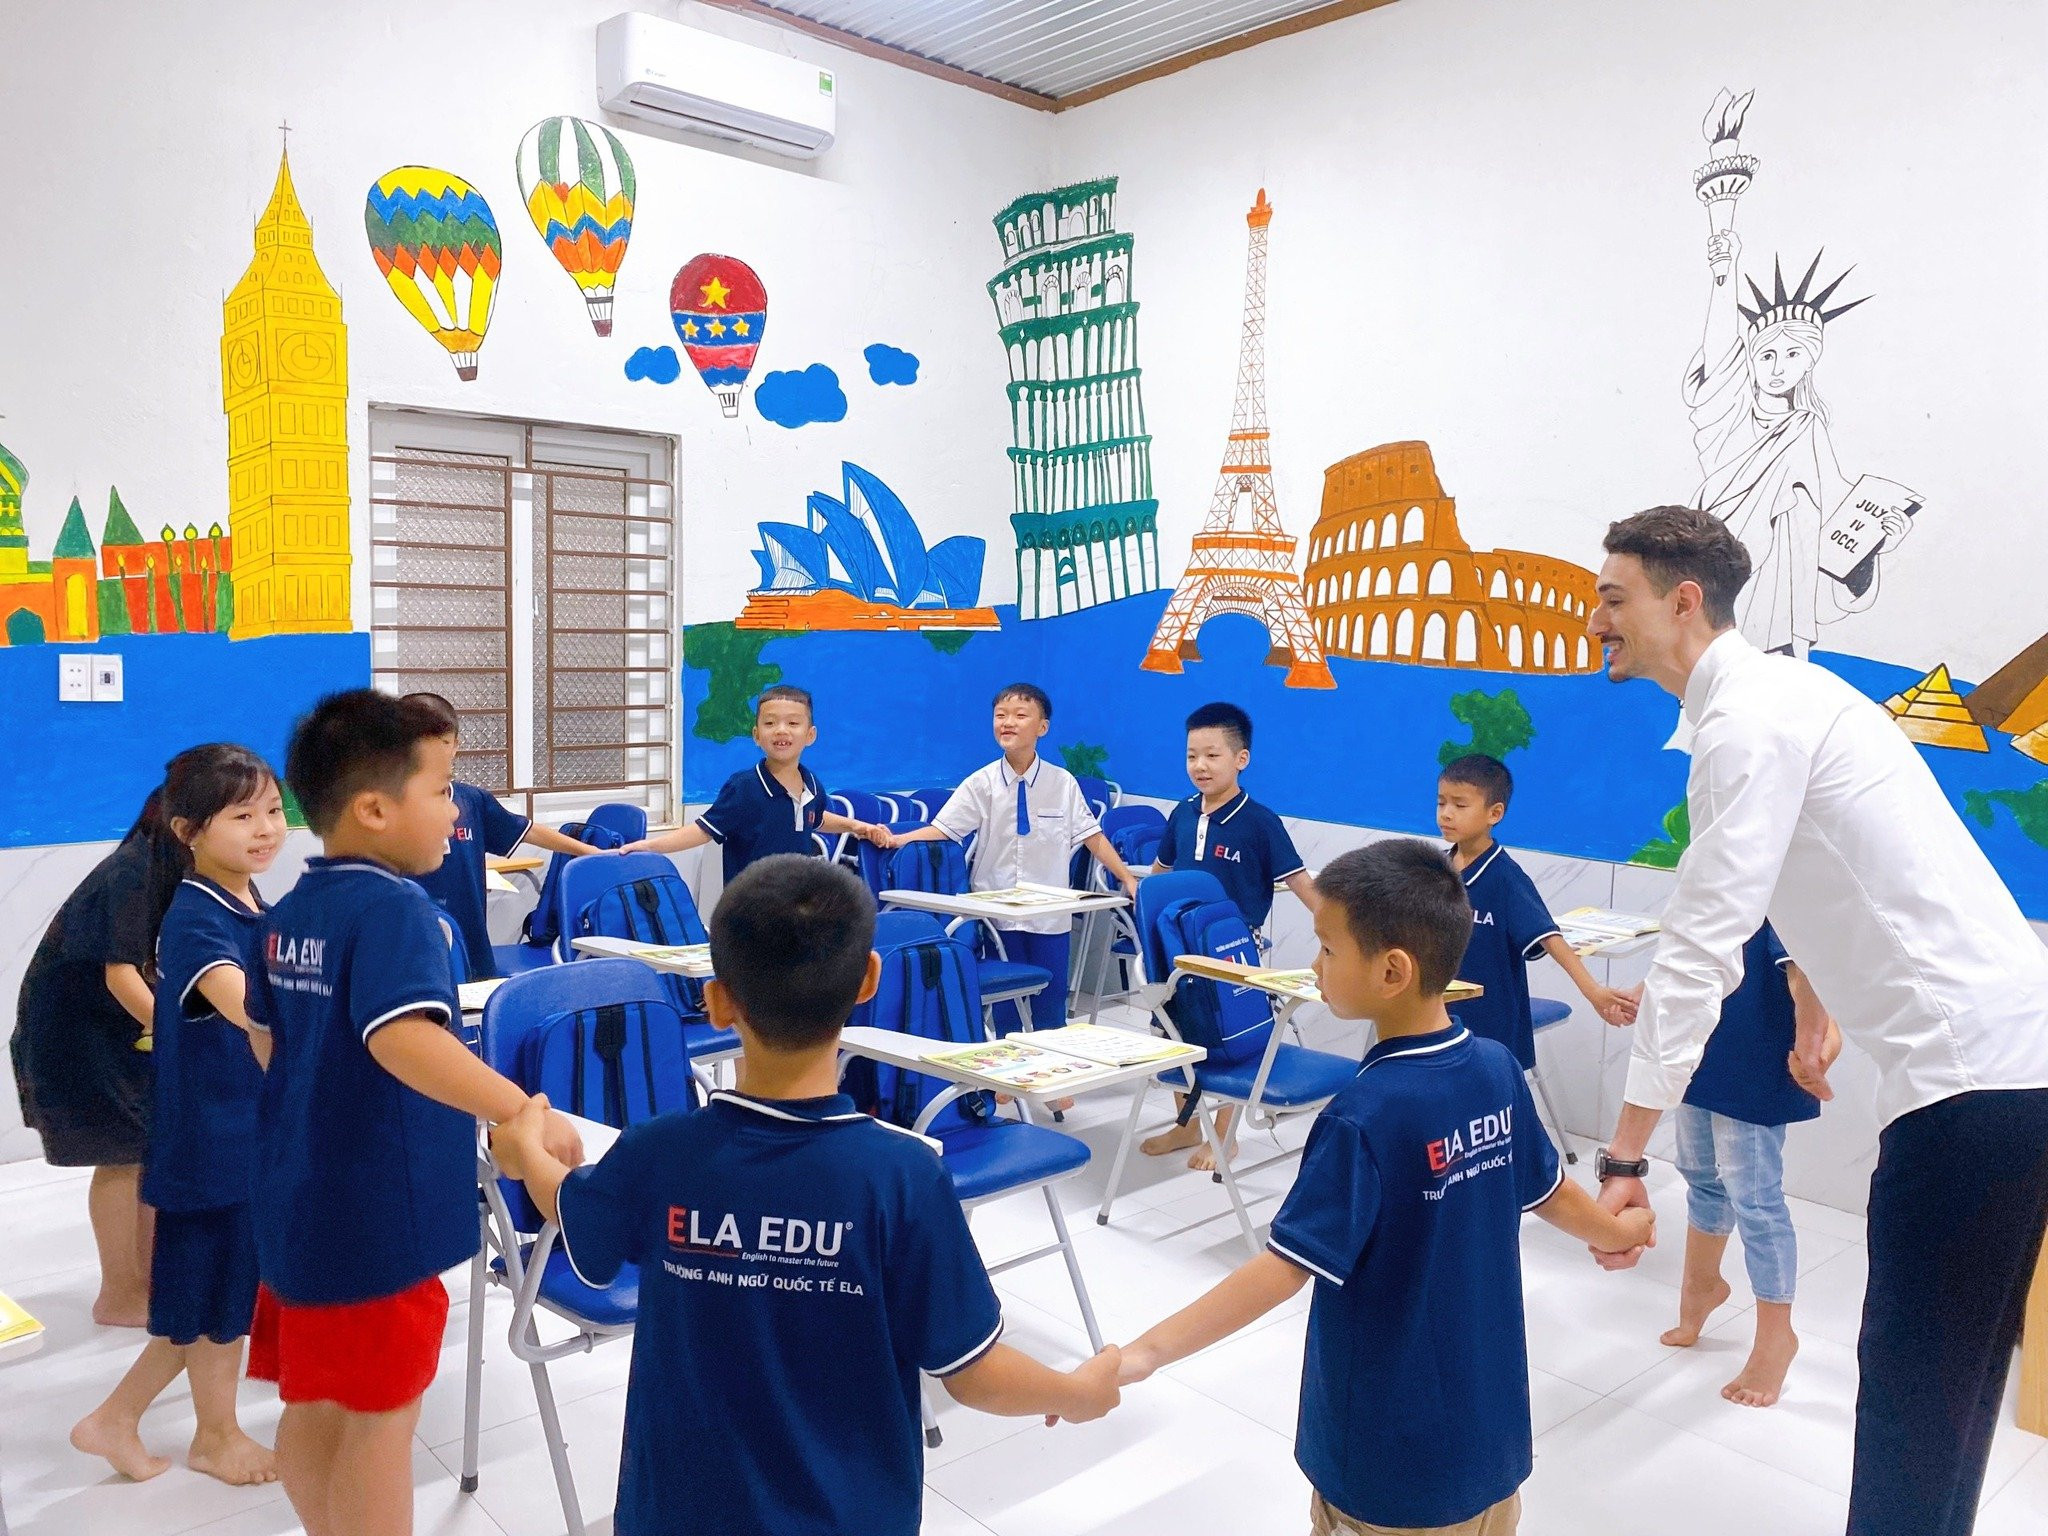 bna_Giáo dục đang là một trong những lĩnh vực được đầu tư mạnh tại thị xã Thái Hoà.jpg